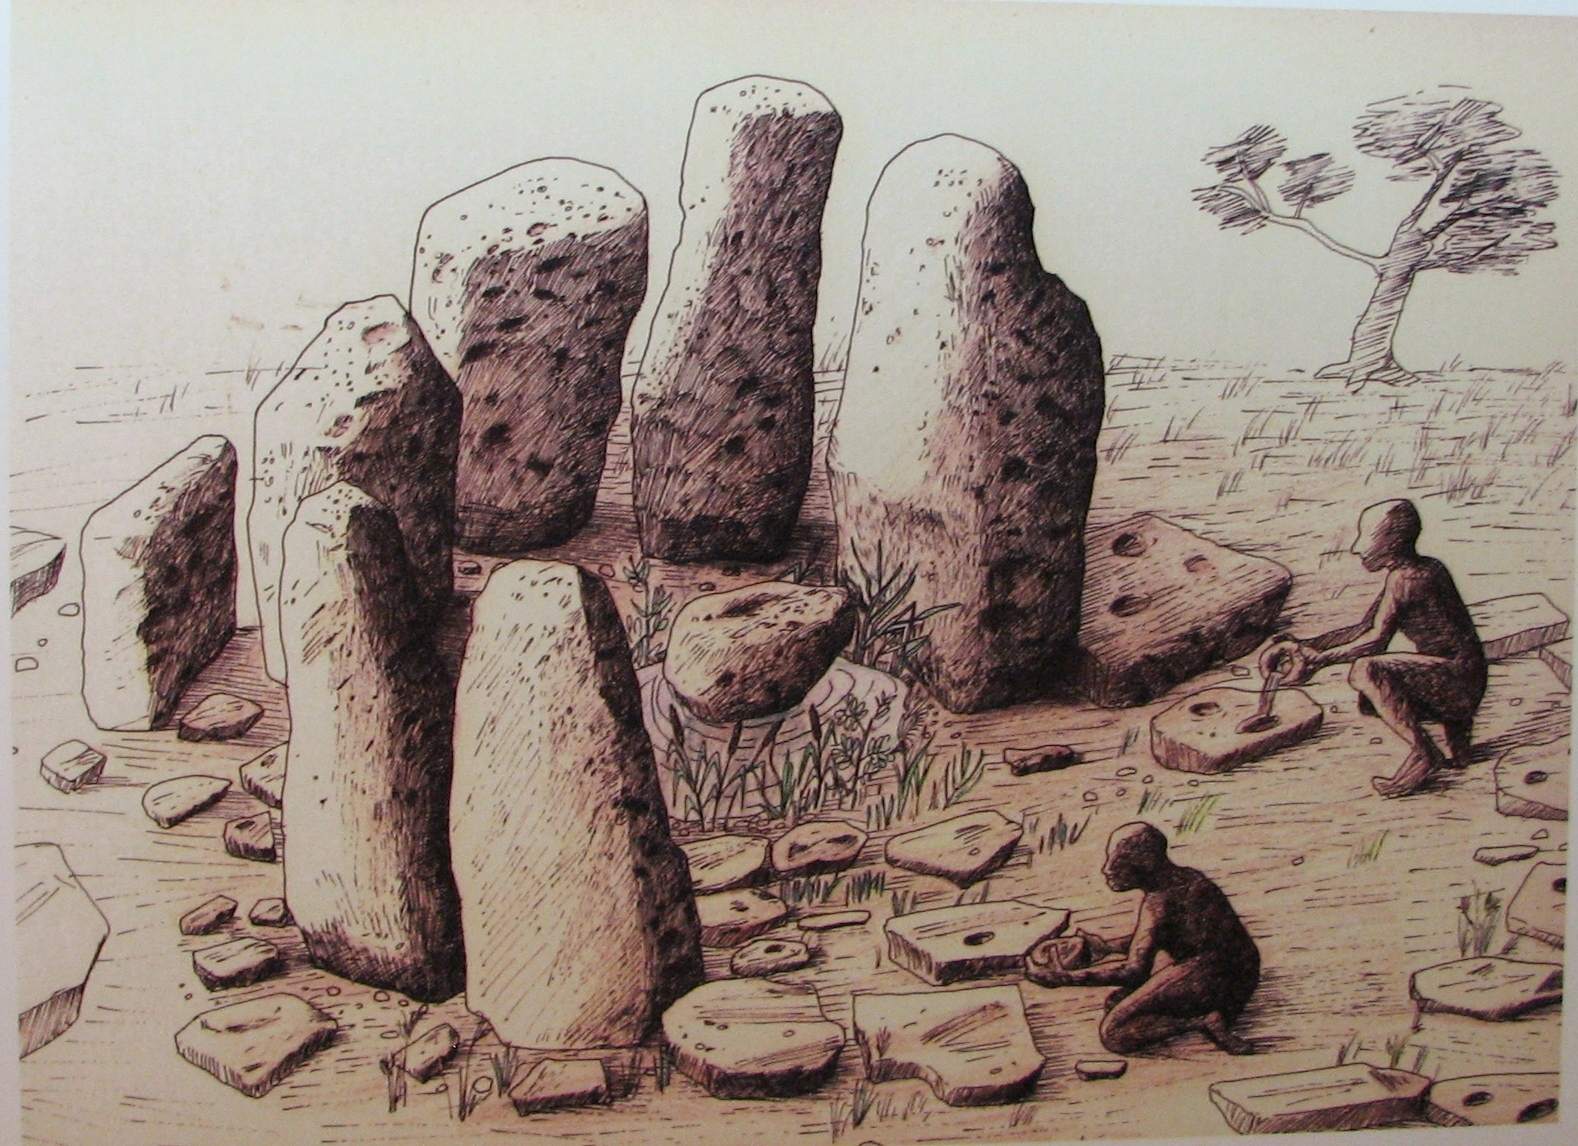 Atlit-Yam: En nedsänkt neolitisk bosättning 2